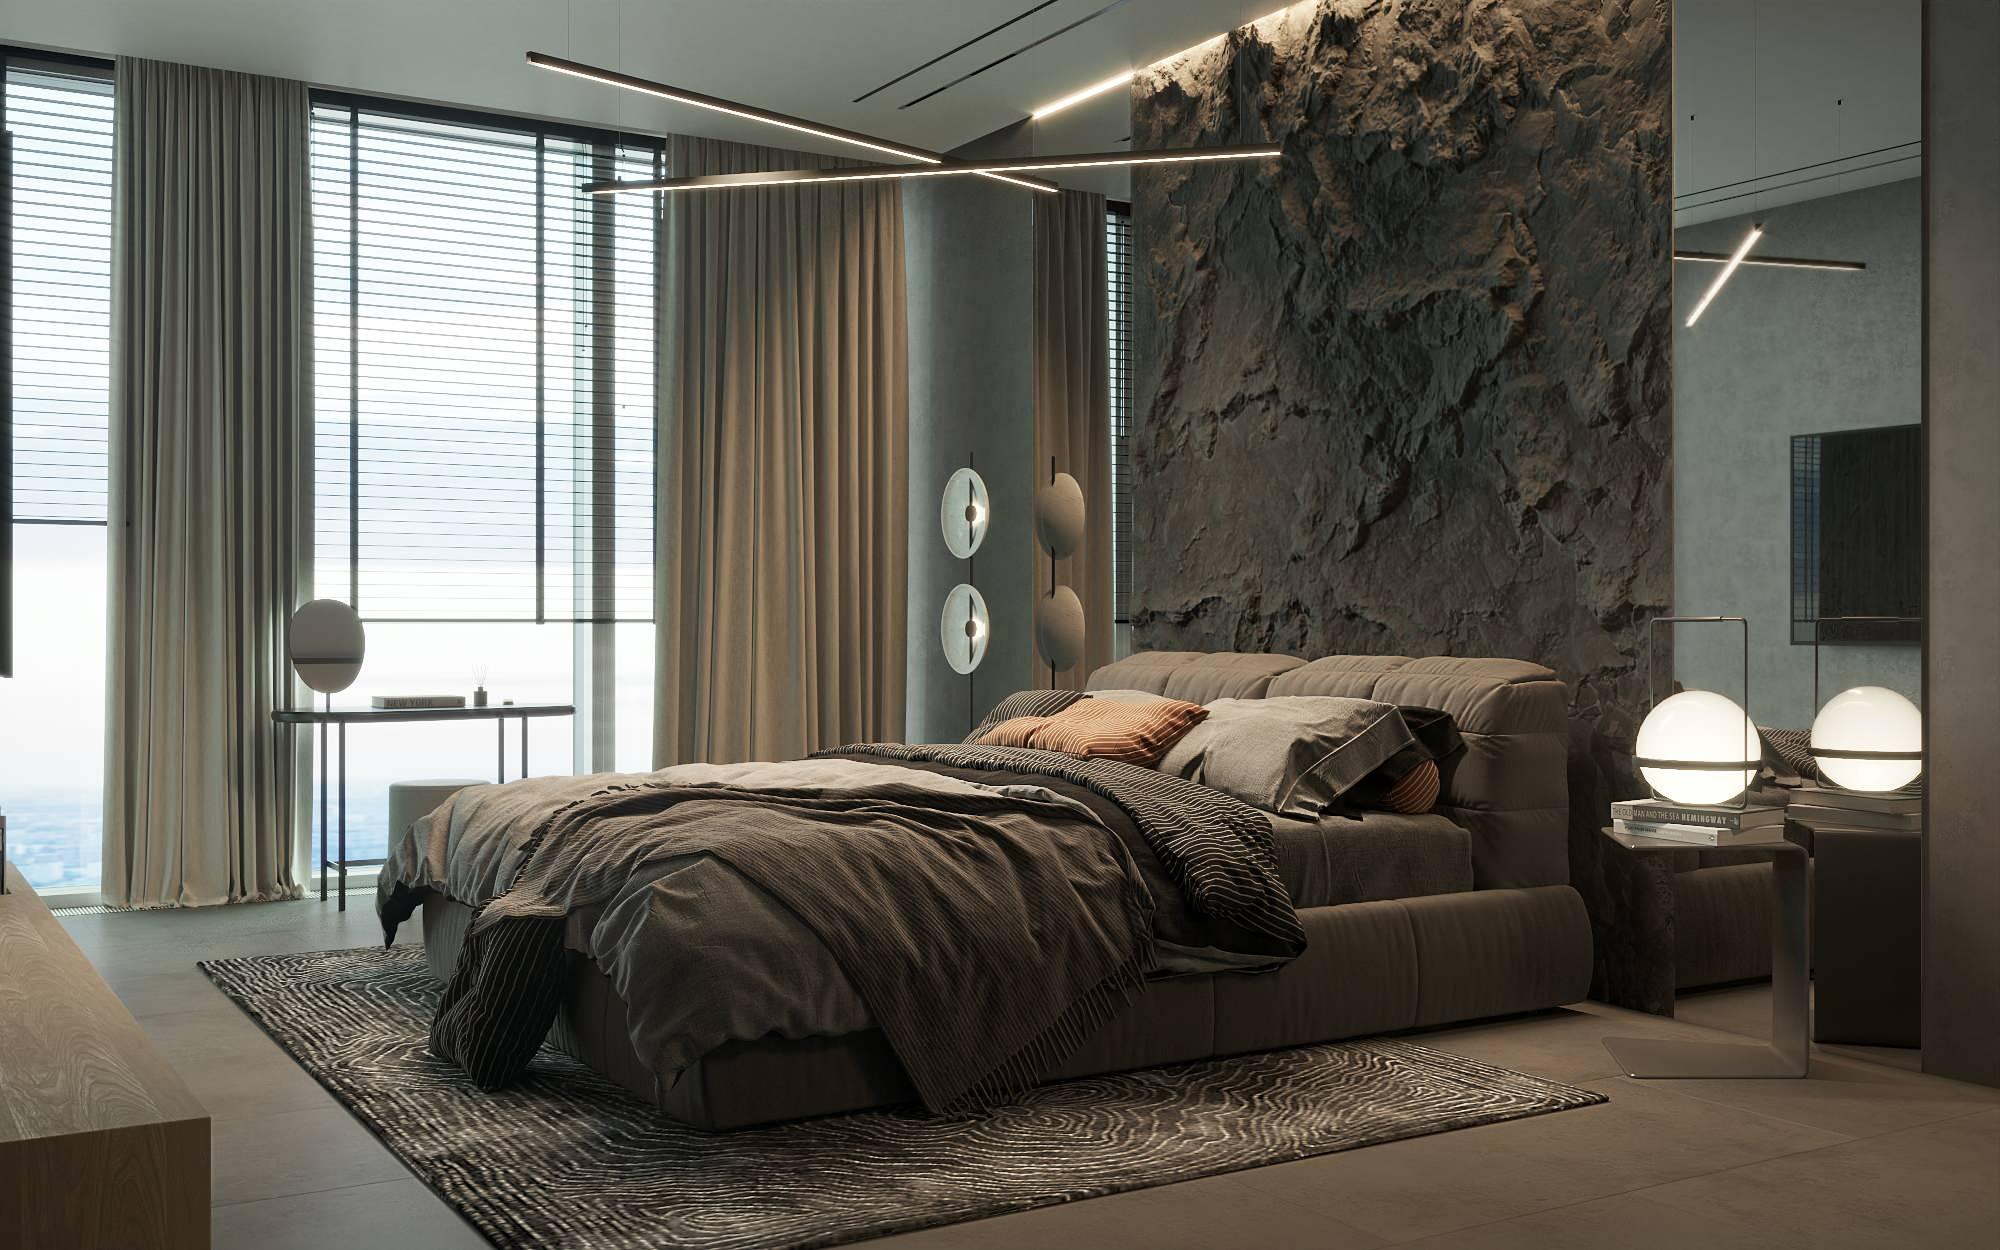 Интерьер спальни с бра над кроватью и светильниками над кроватью в современном стиле, в стиле лофт и гранже